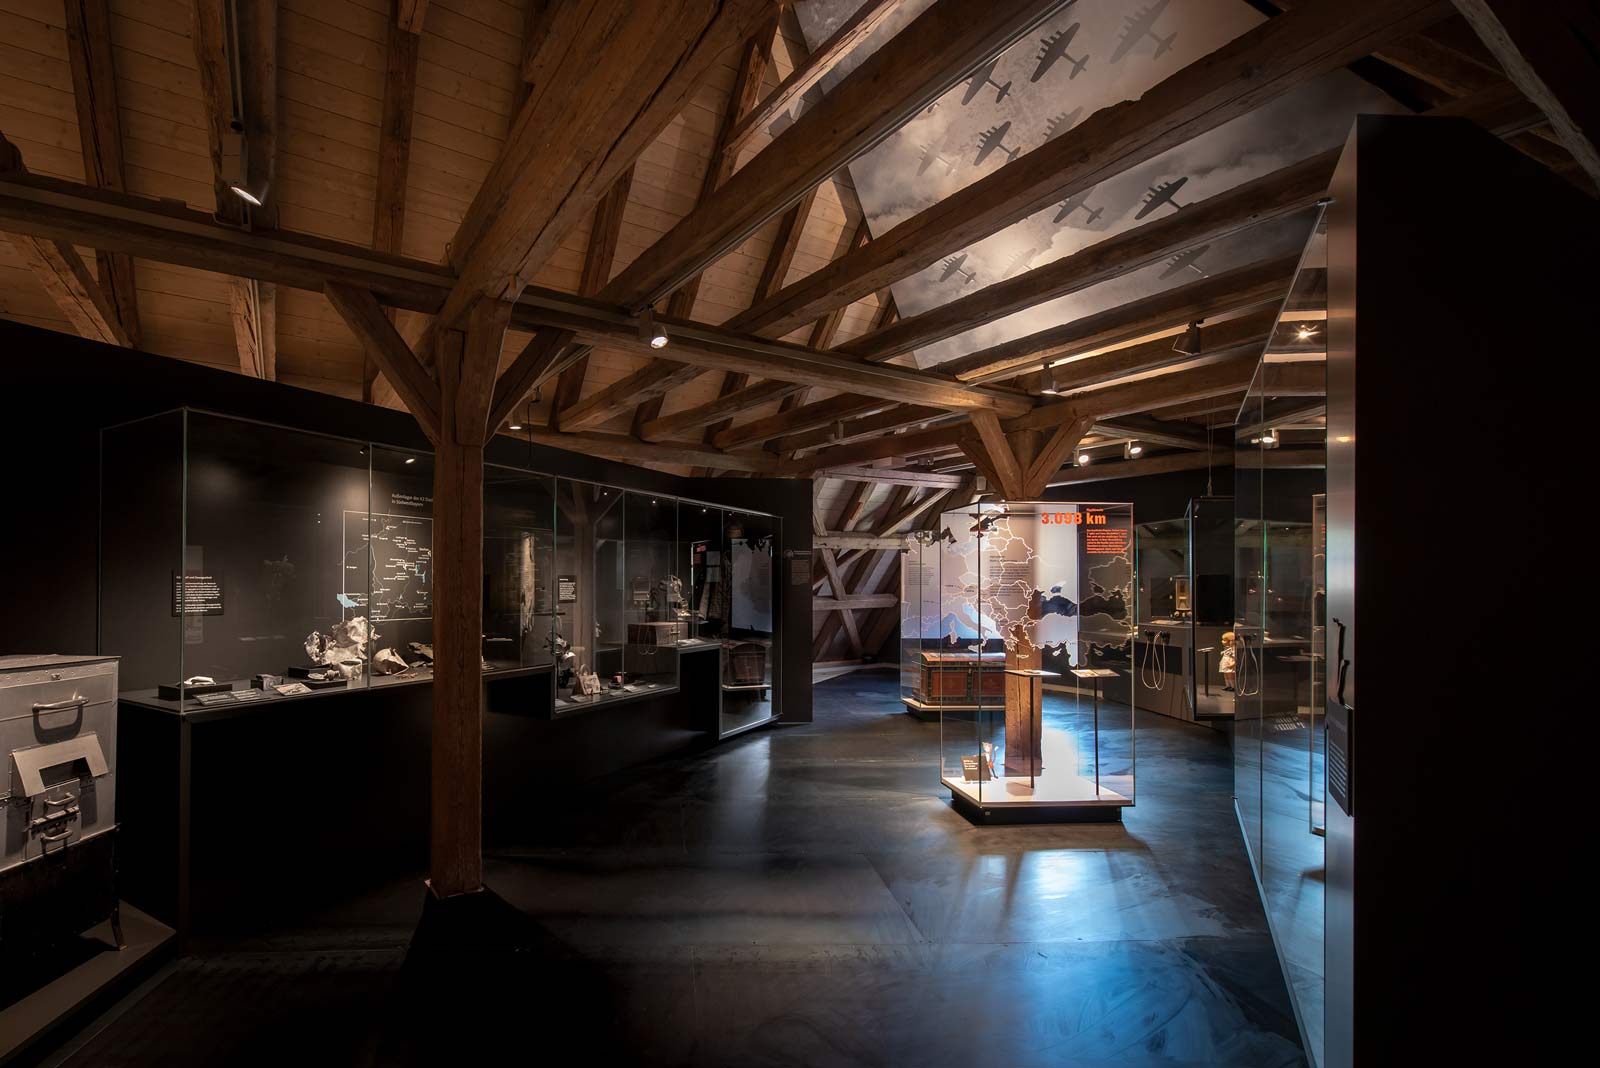 Das Referenzbild für Ausstellungsgestaltung aus der Dauerausstellung Tradition und Umbruch zeigt eine Rauminszenierung mit Ganzglas-Vitrinen.